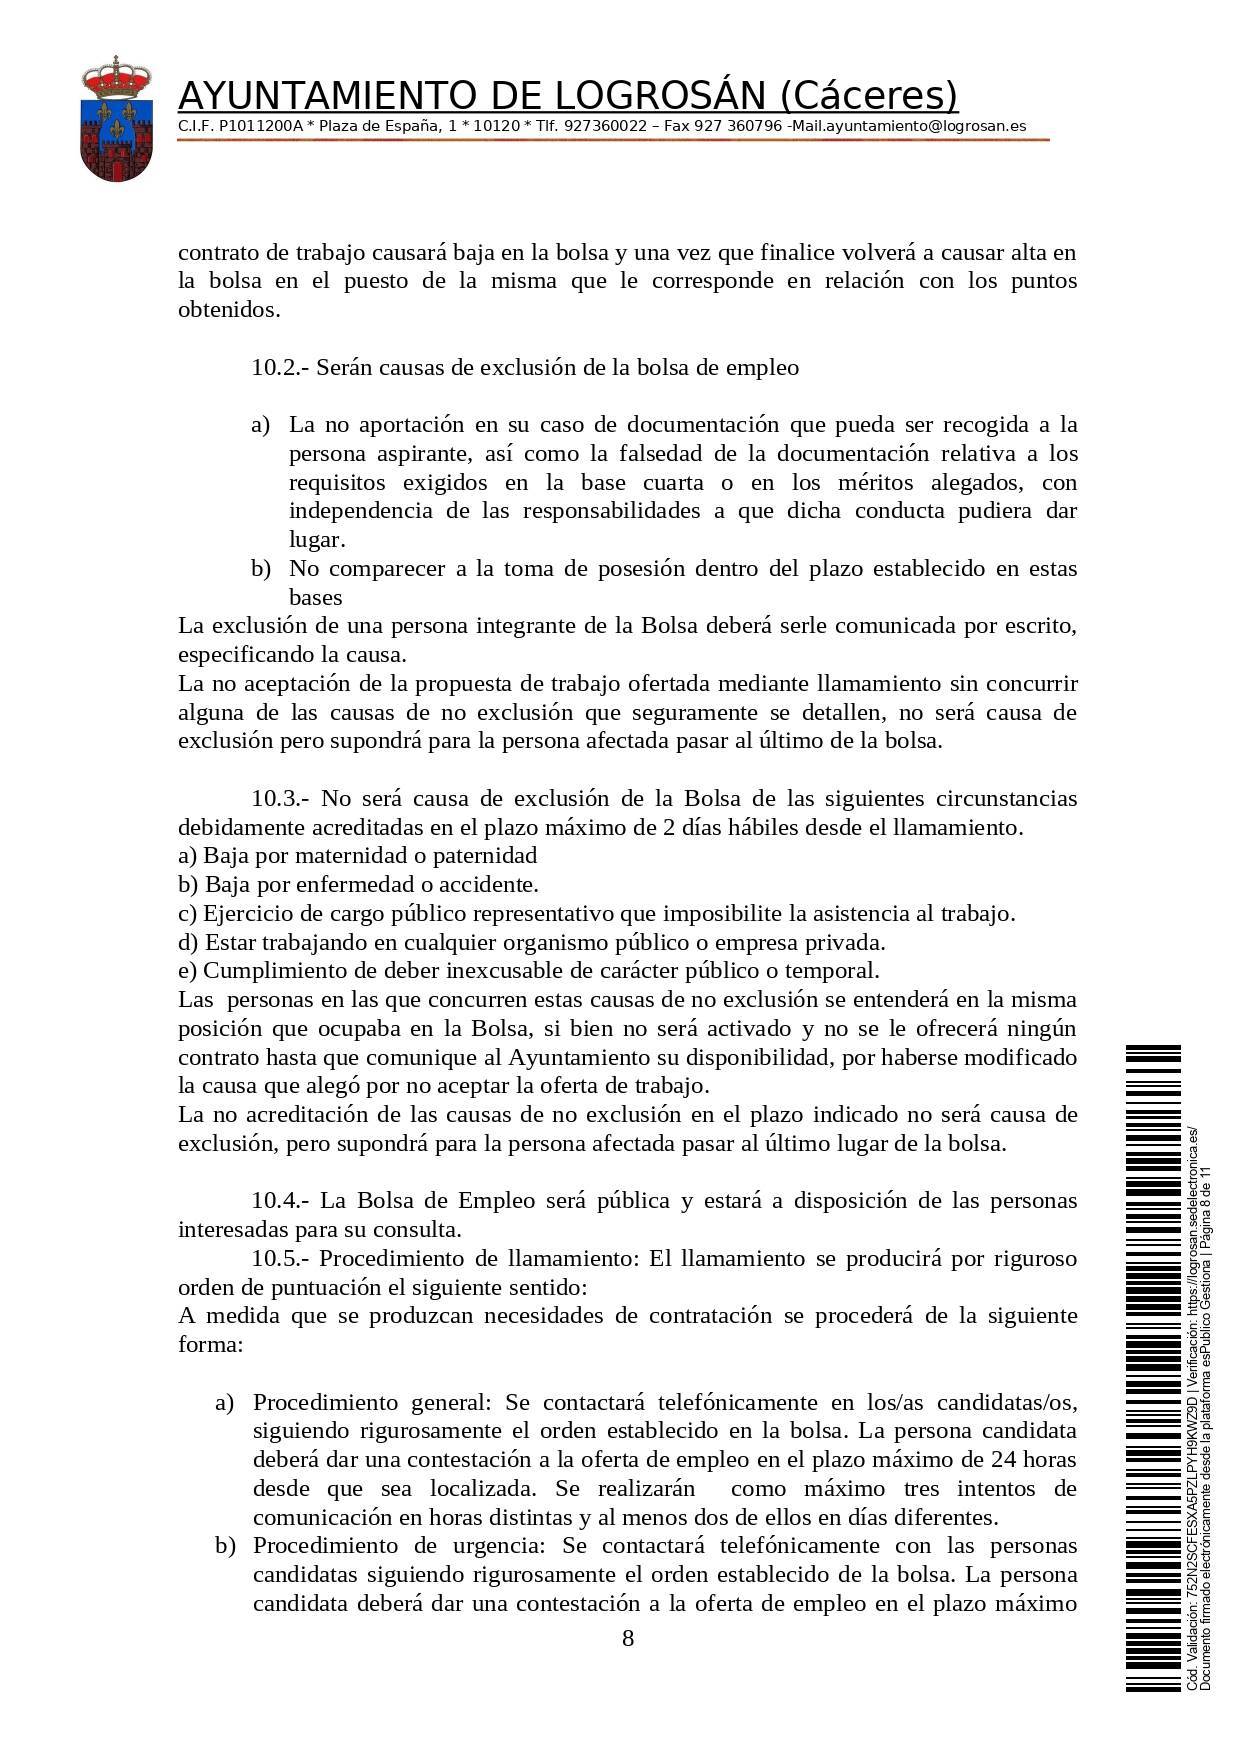 Bolsa de una alguacil (2021) - Logrosán (Cáceres) 8